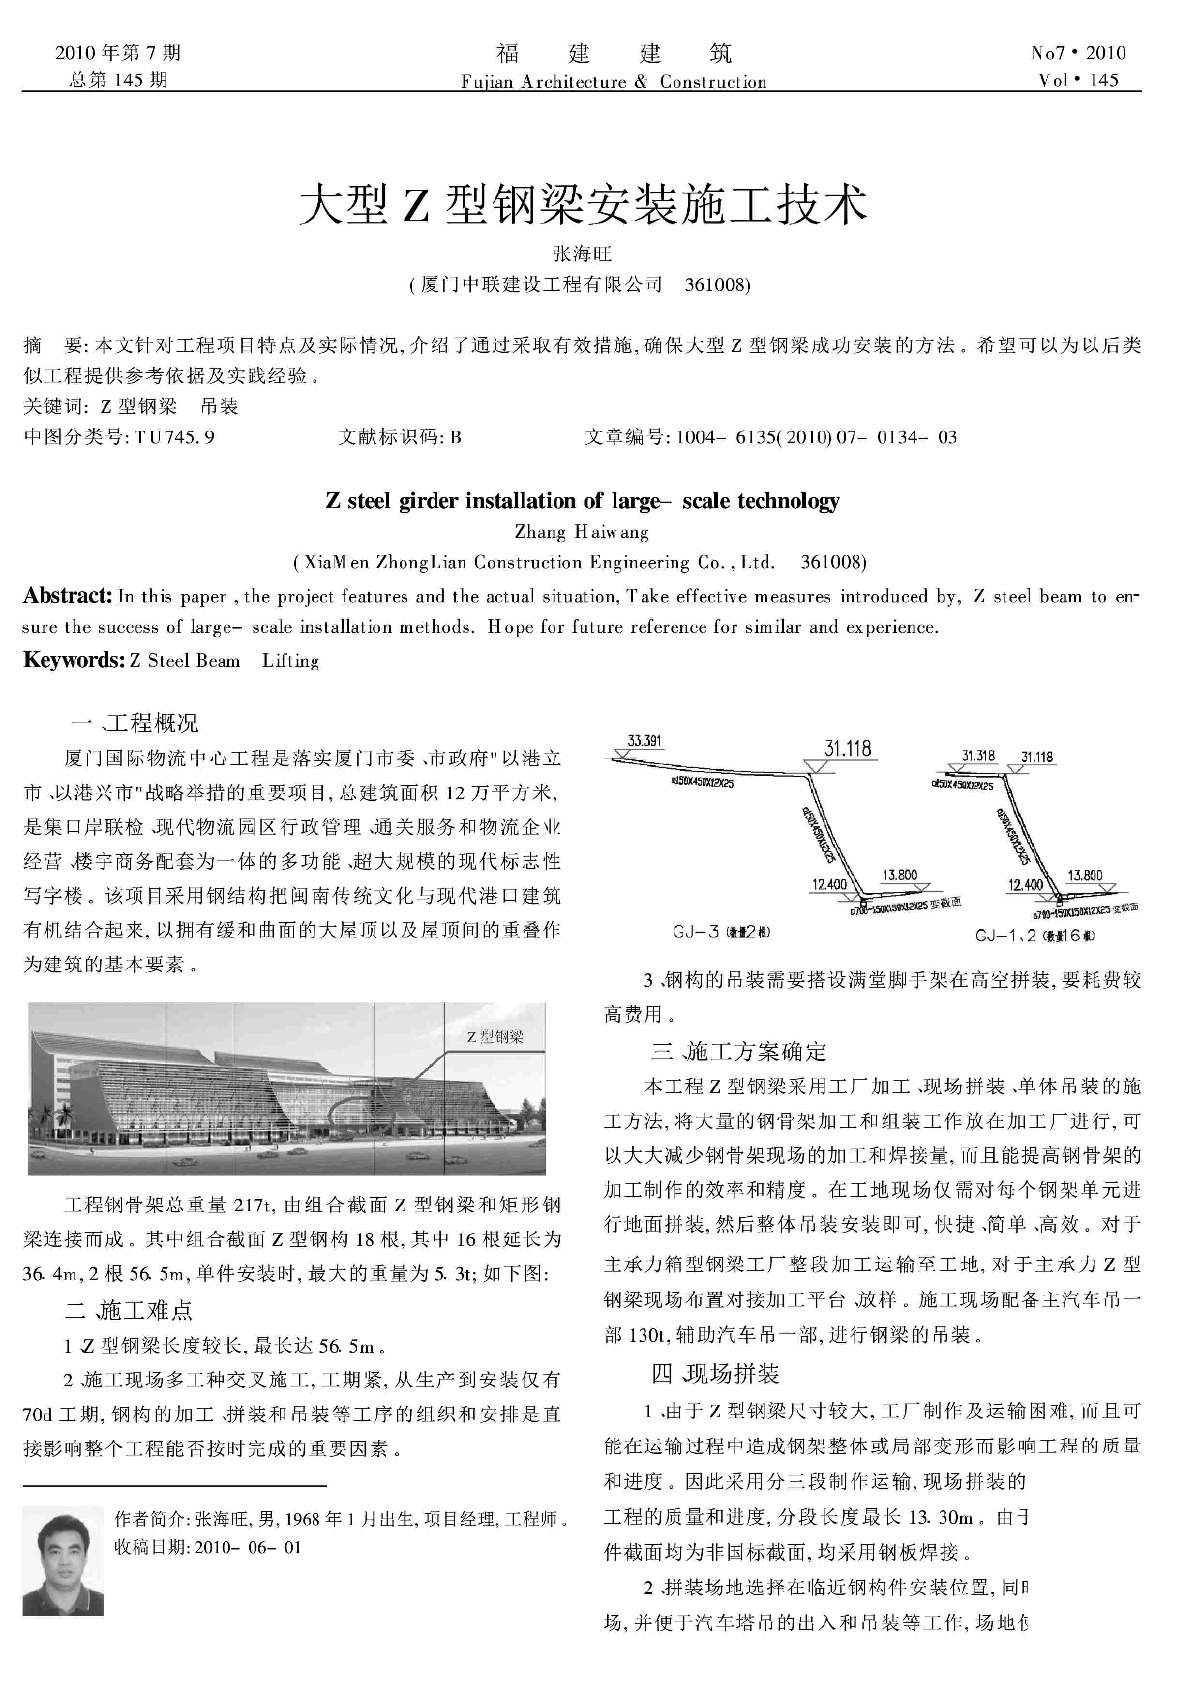 大型Z型钢梁安装施工技术_张海旺.pdf-图一